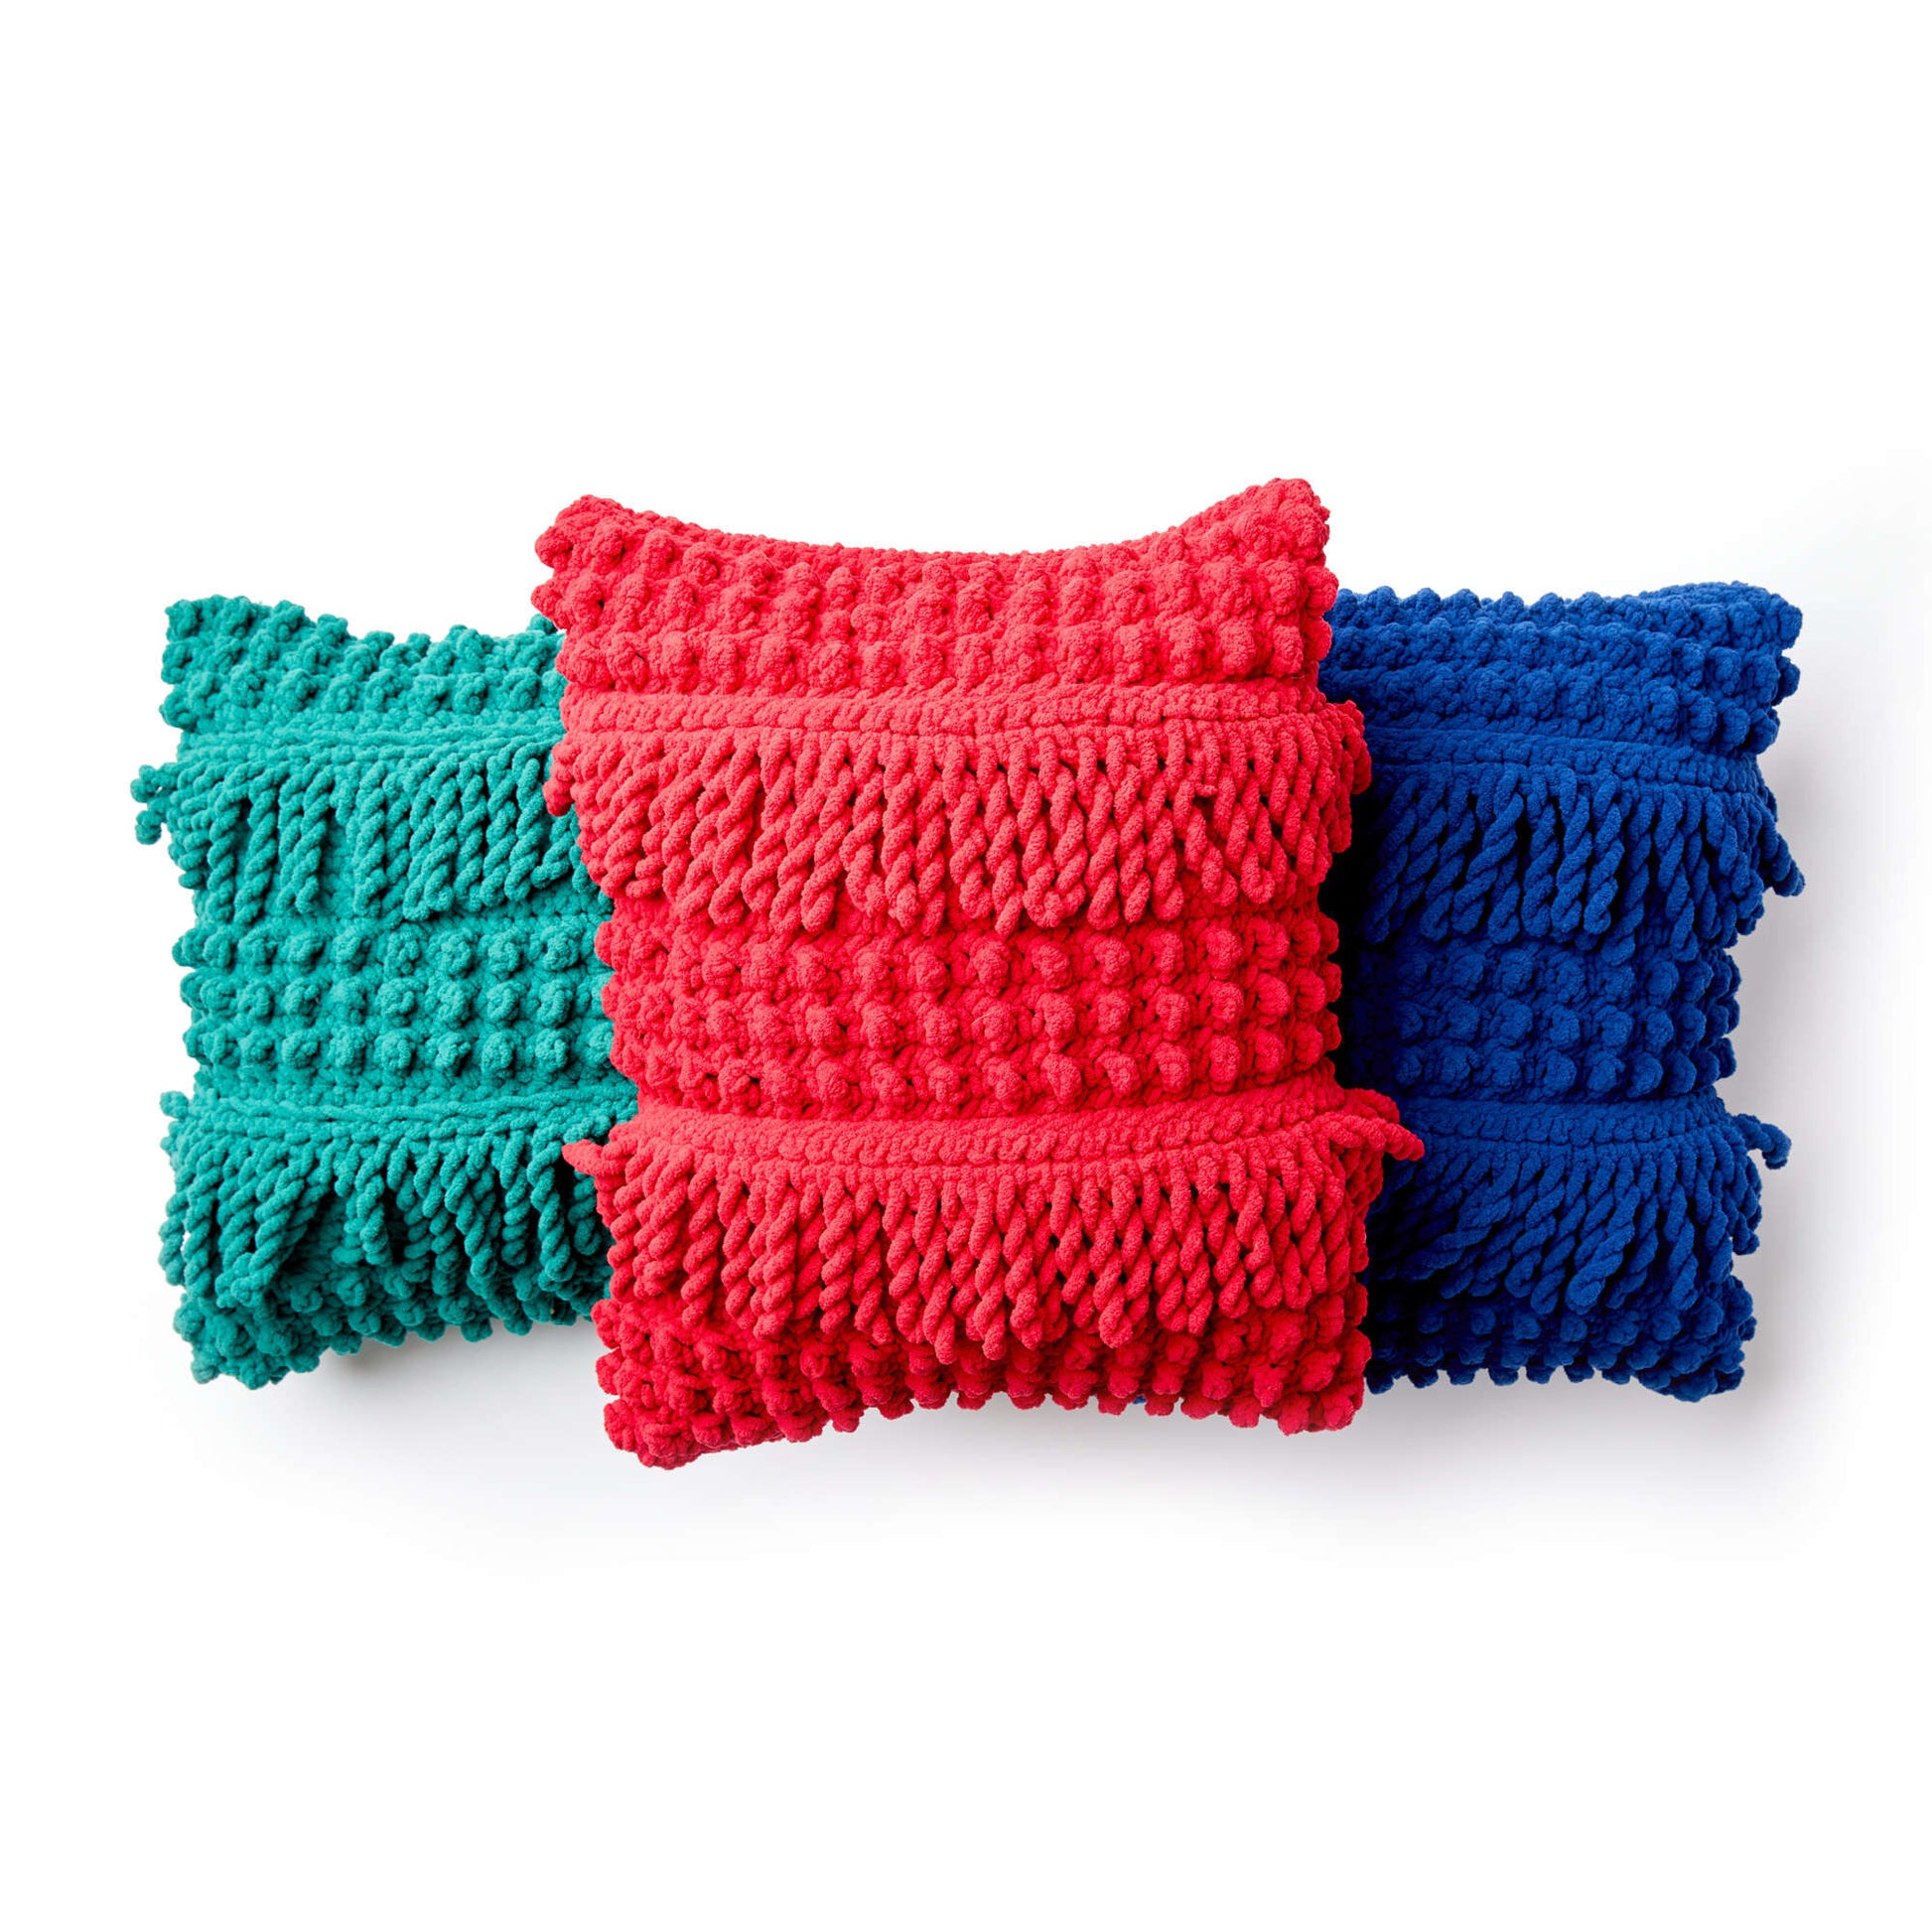 Free Bernat Bobble Fringe Crochet Pillow Pattern